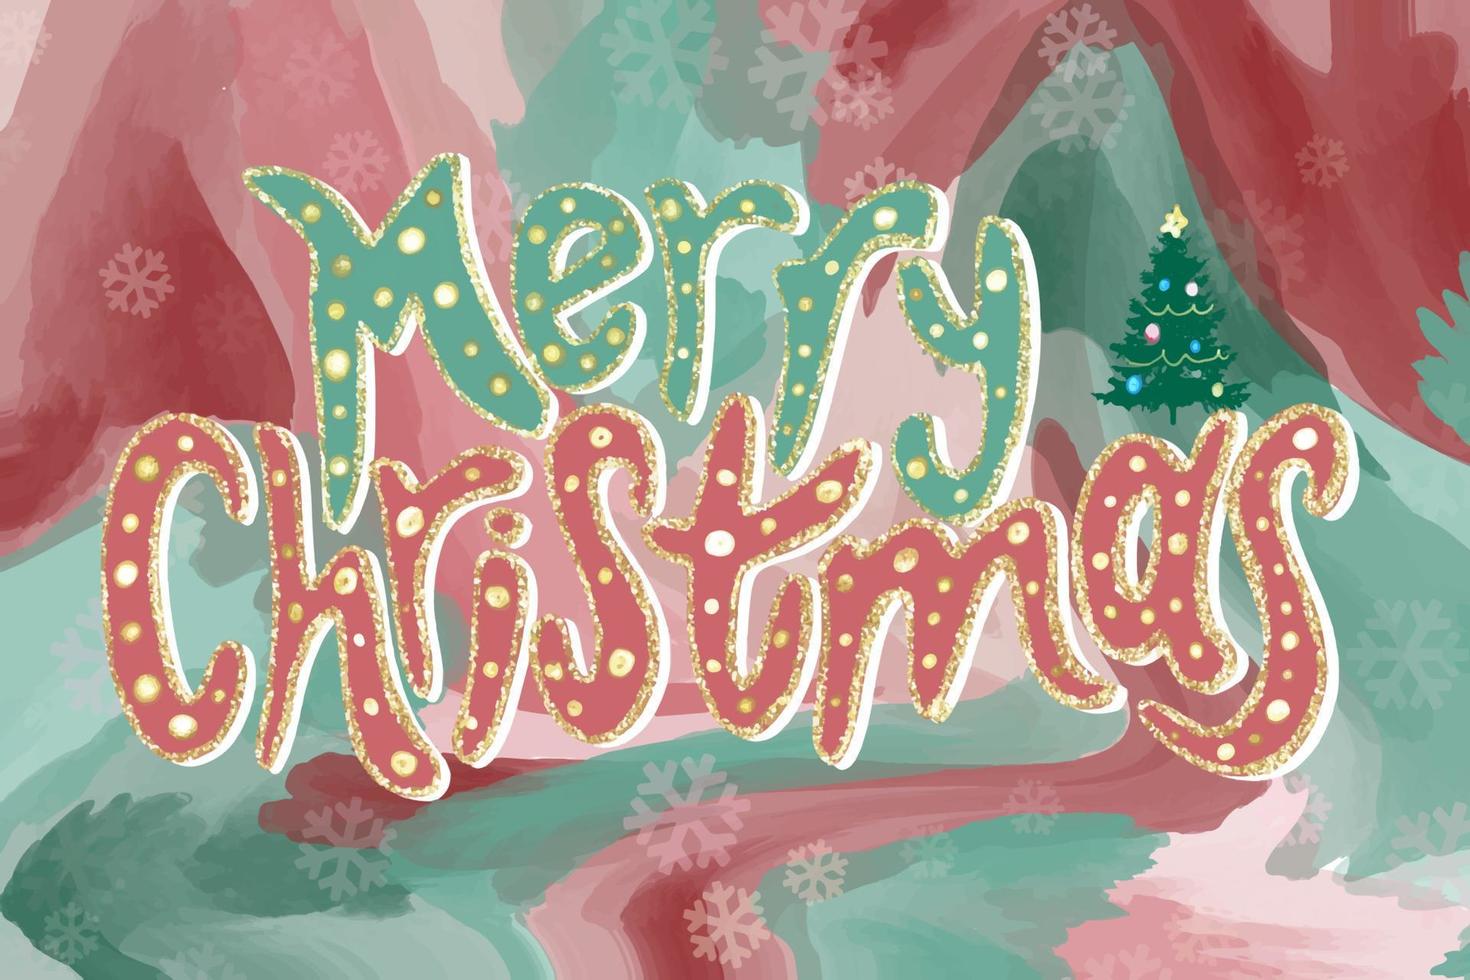 Hintergrund für eine Grußkarte der frohen Weihnachten mit einem Kiefernbaum-Kopierraum gegen einen schönen Nachthimmel mit Schnee. vektor